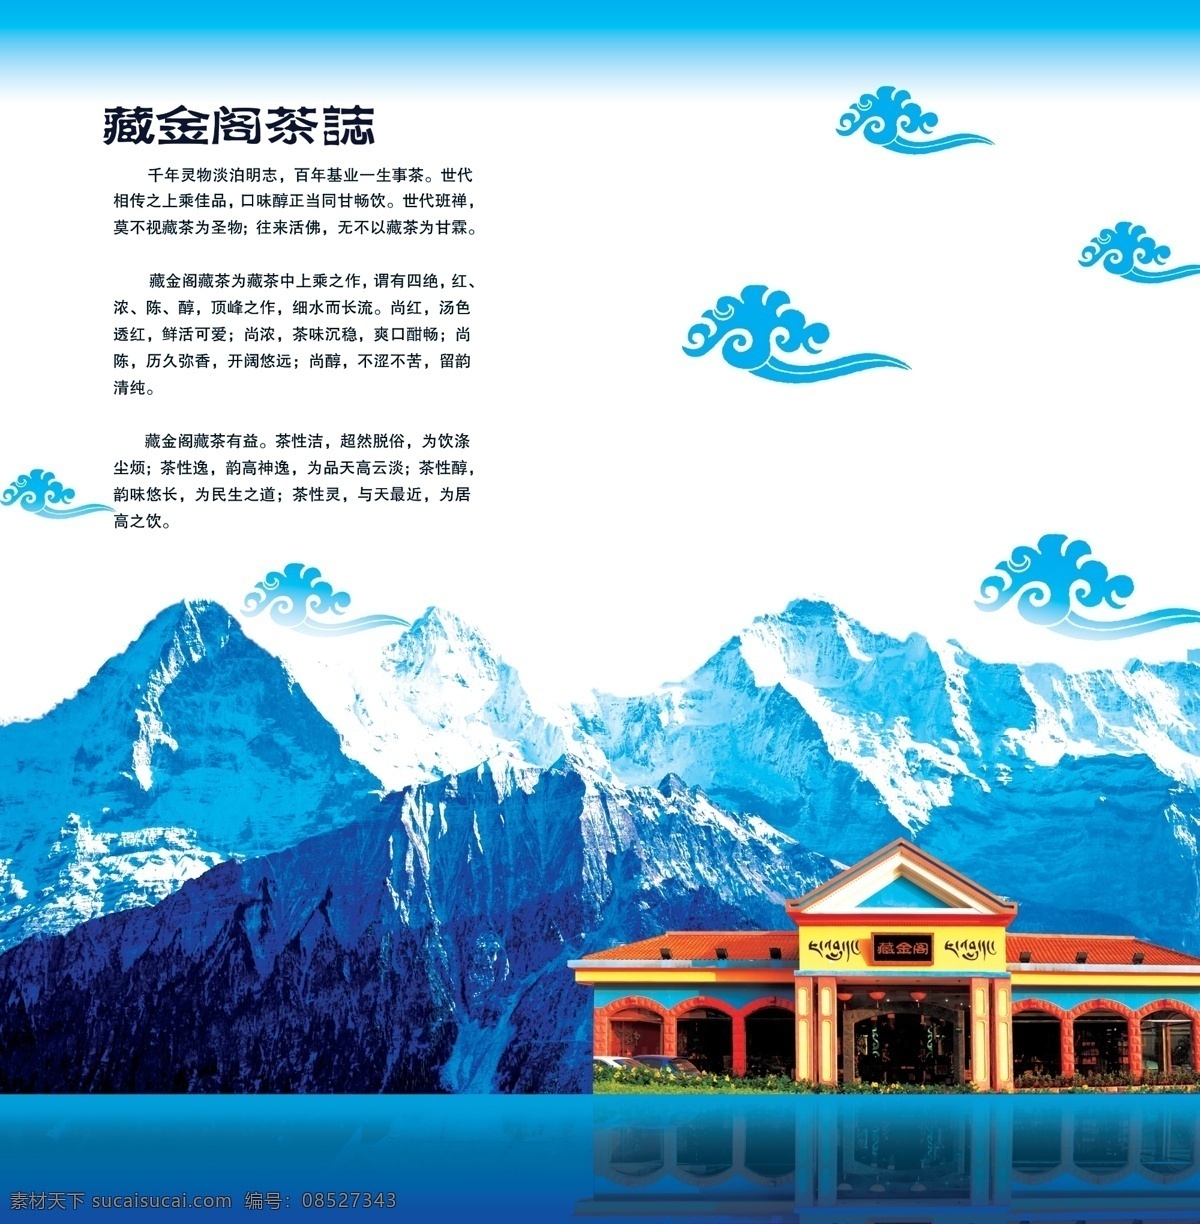 藏茶免费下载 广告设计模板 画册 画册设计 源文件库 藏茶 其他画册封面